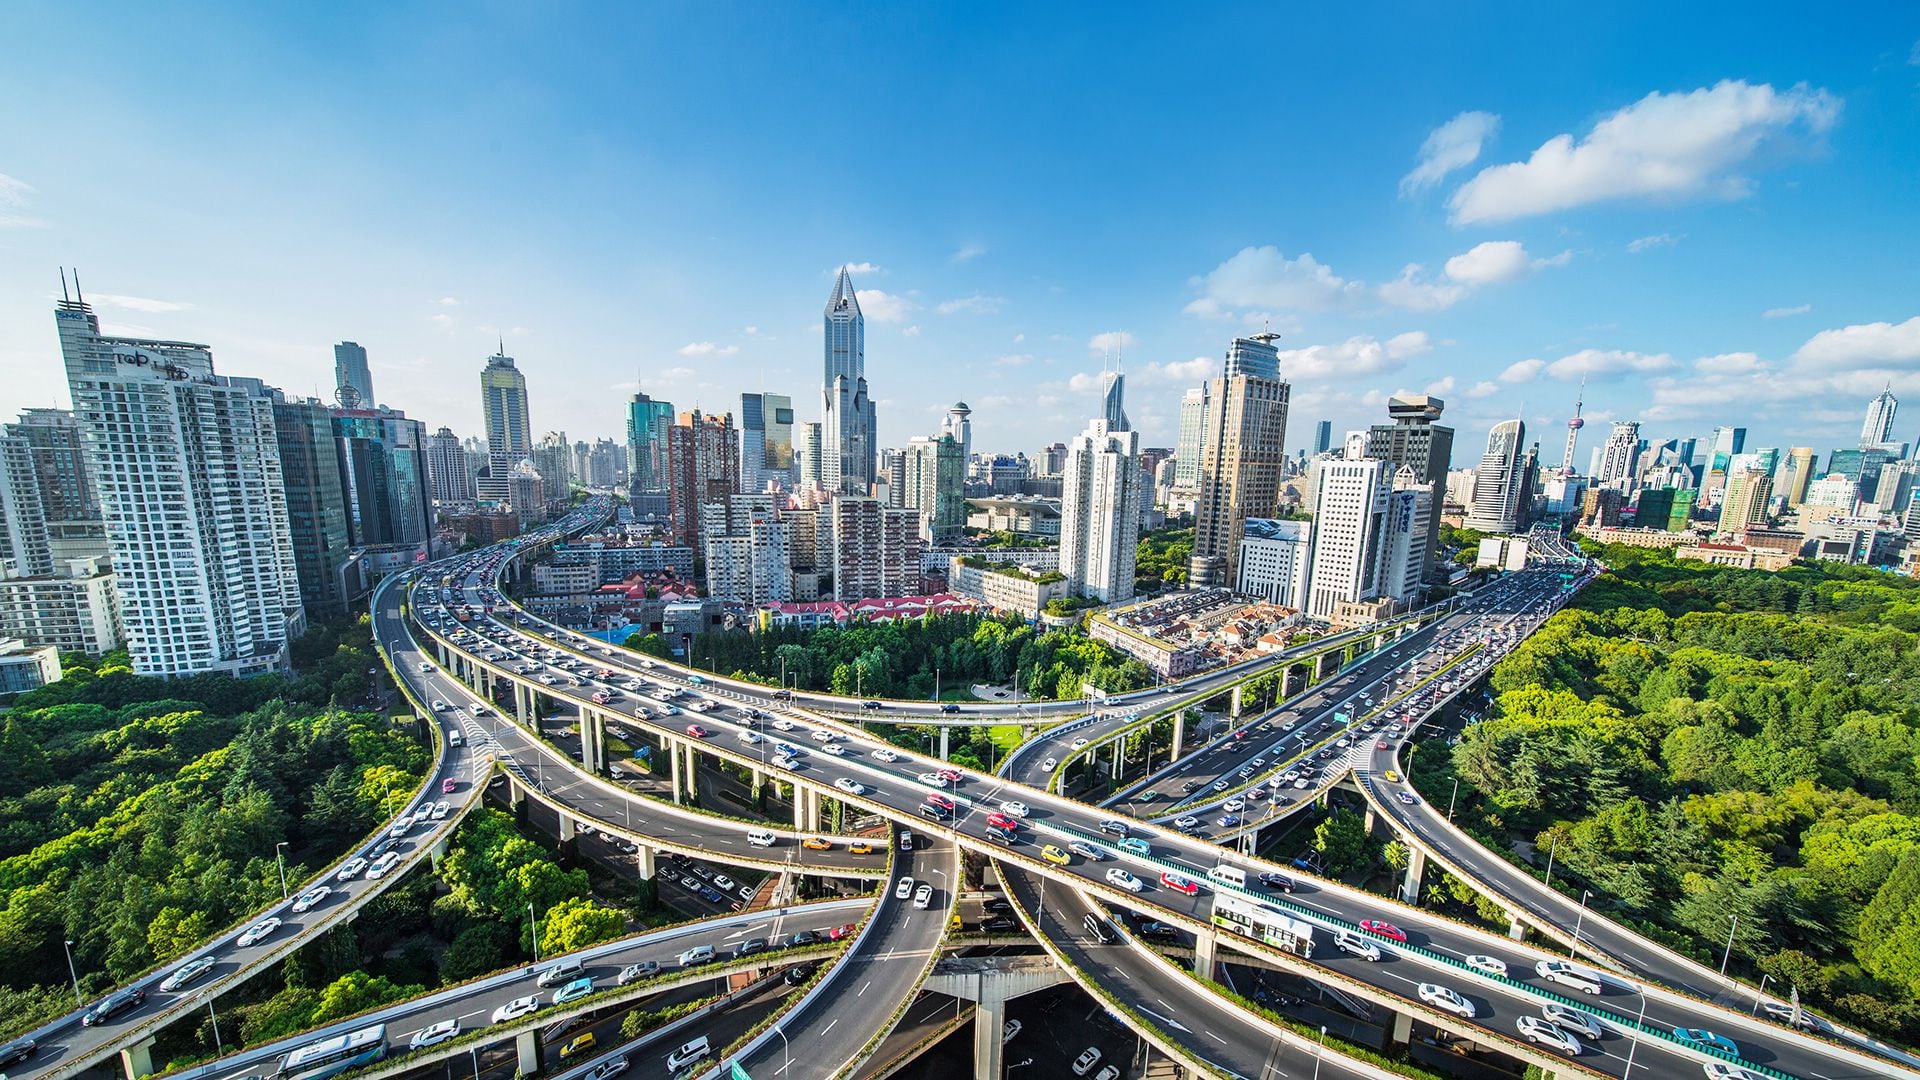 El tráfico constante y cargado es una de las características que refleja los 26 millones de habitantes de Shanghái (Getty)